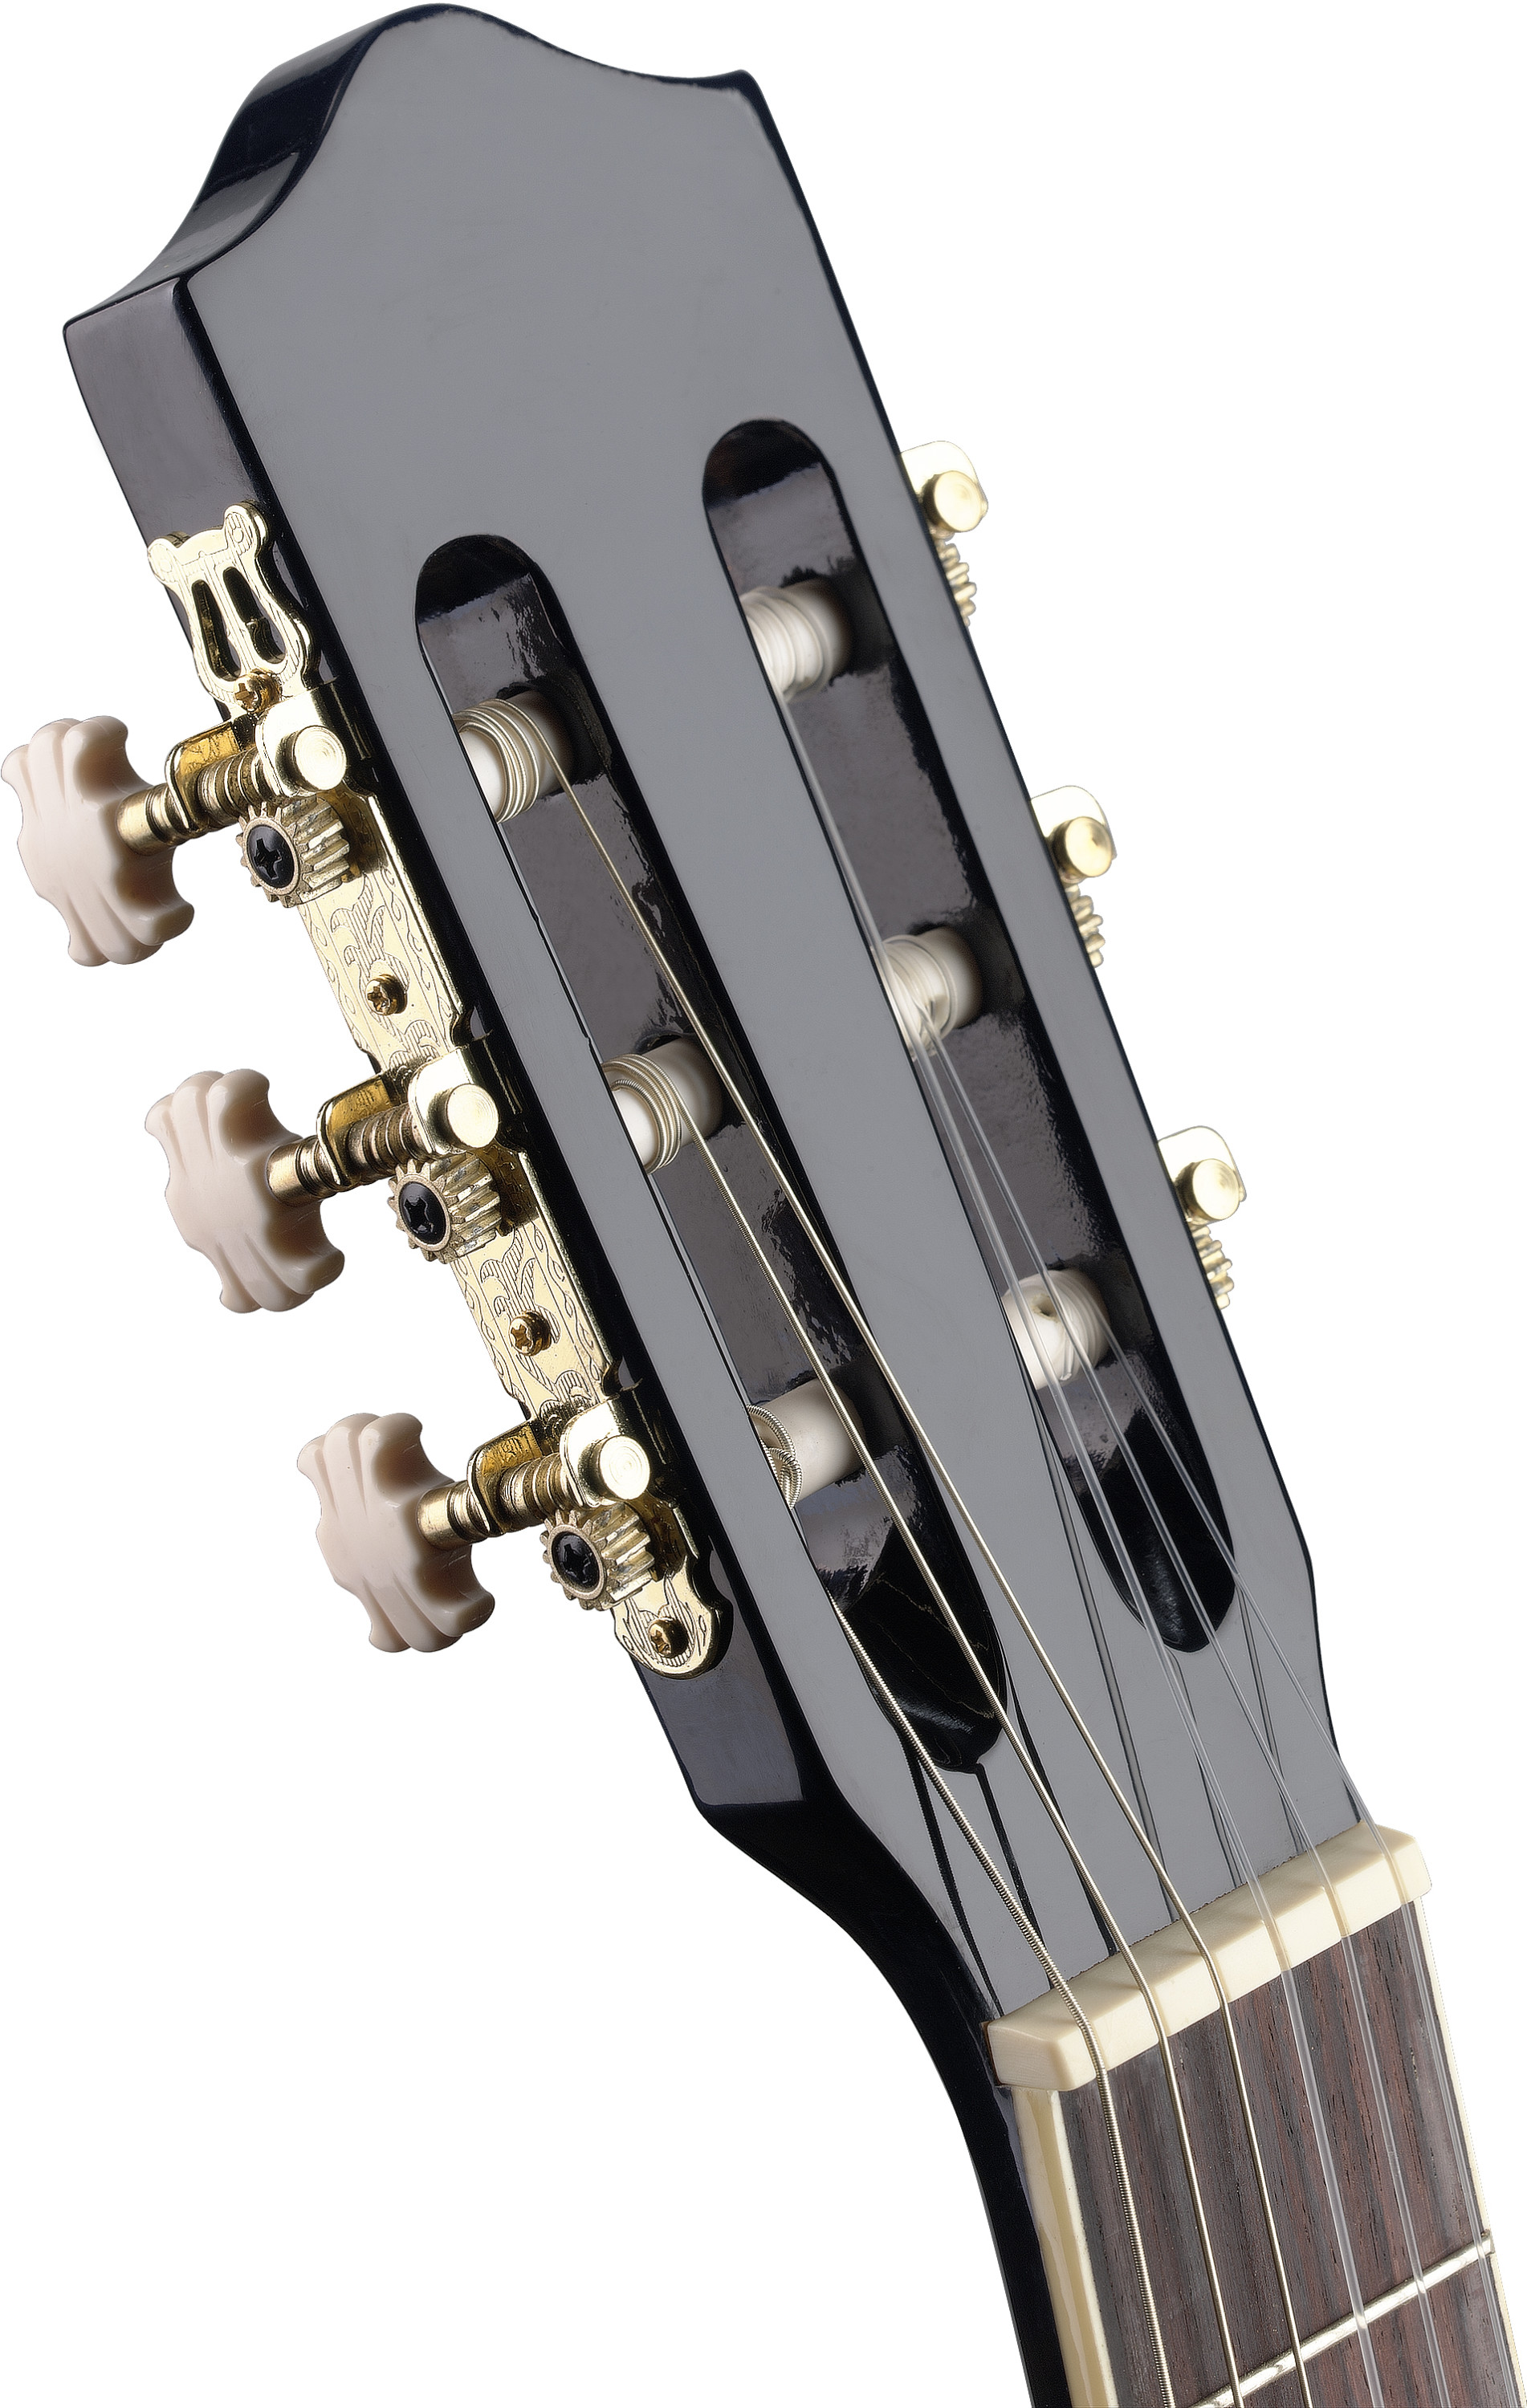 Stagg C546tce Bk Cw Epicea Catalpa - Black - Klassieke gitaar 4/4 - Variation 3